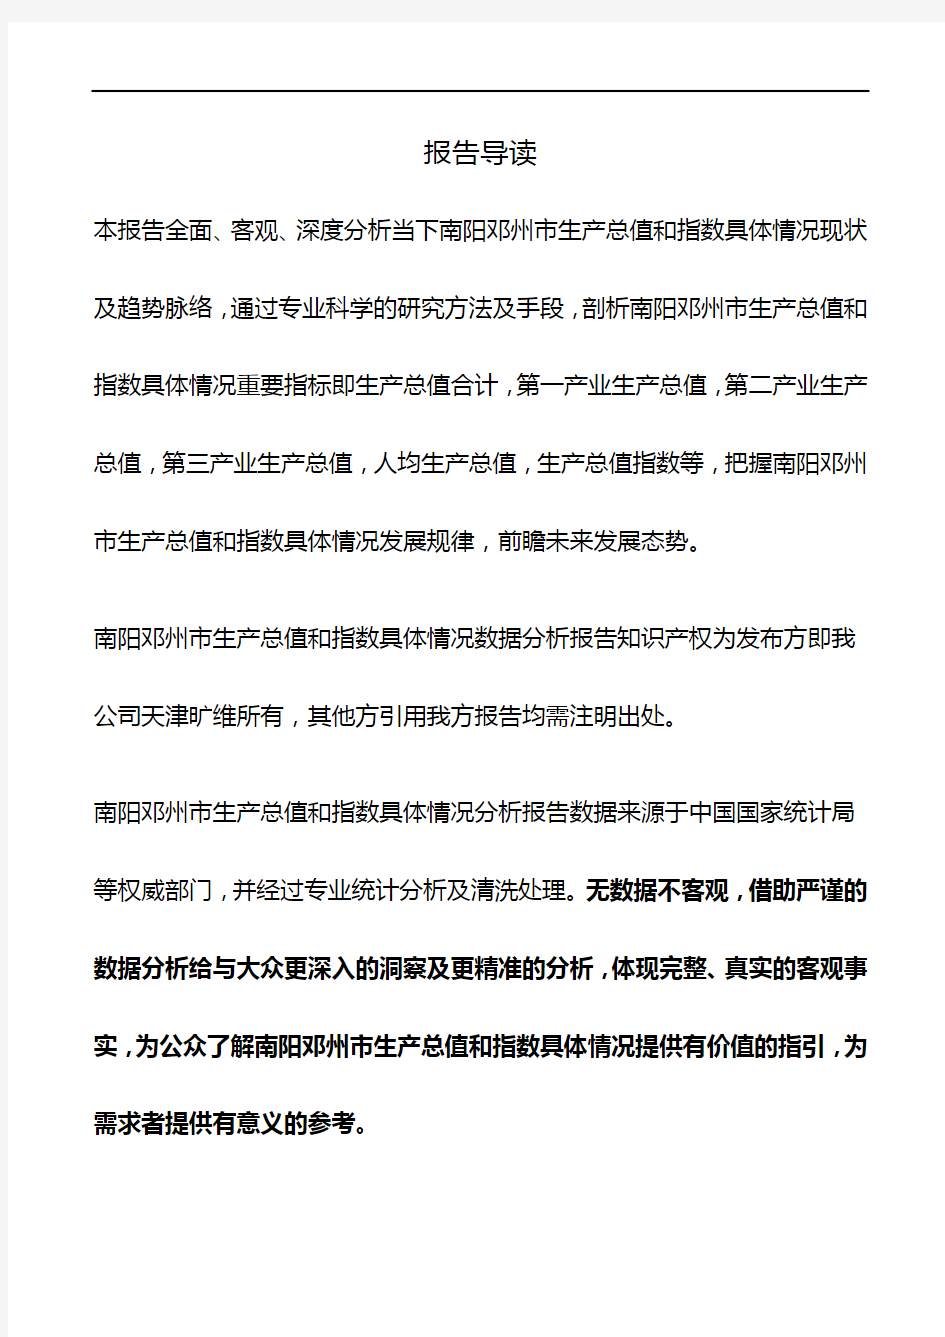 河南省南阳邓州市生产总值和指数具体情况数据分析报告2019版